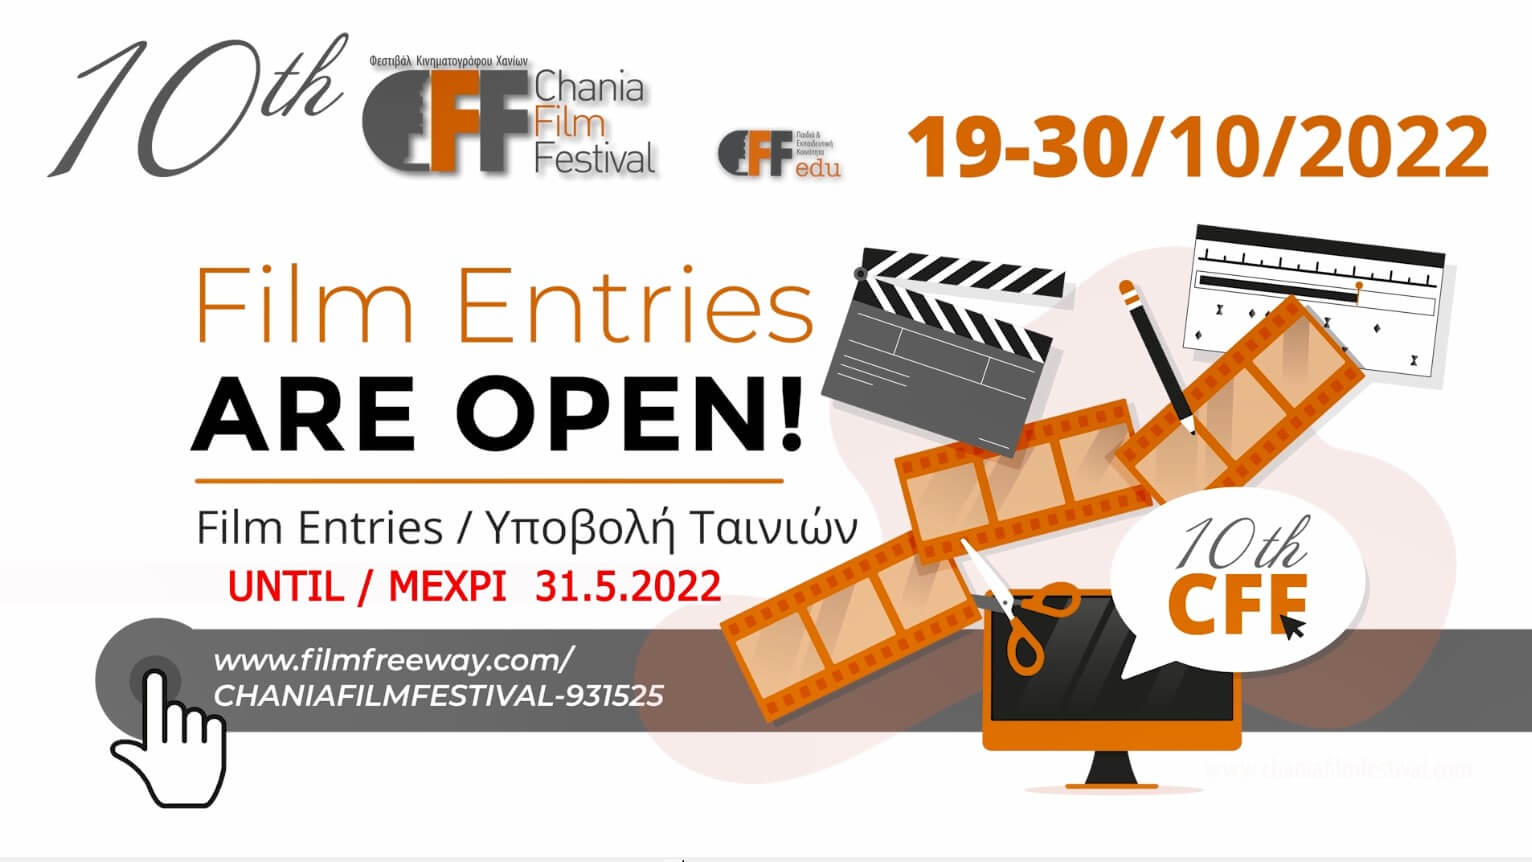 Ολοκληρώνετε την Τρίτη 31 Μαΐου 2022 , η υποβολή ταινιών για το 10ο Φεστιβάλ Κινηματογράφου Χανίων & το 10ο Φεστιβάλ Κινηματογράφου Χανίων στην Εκπαίδευση